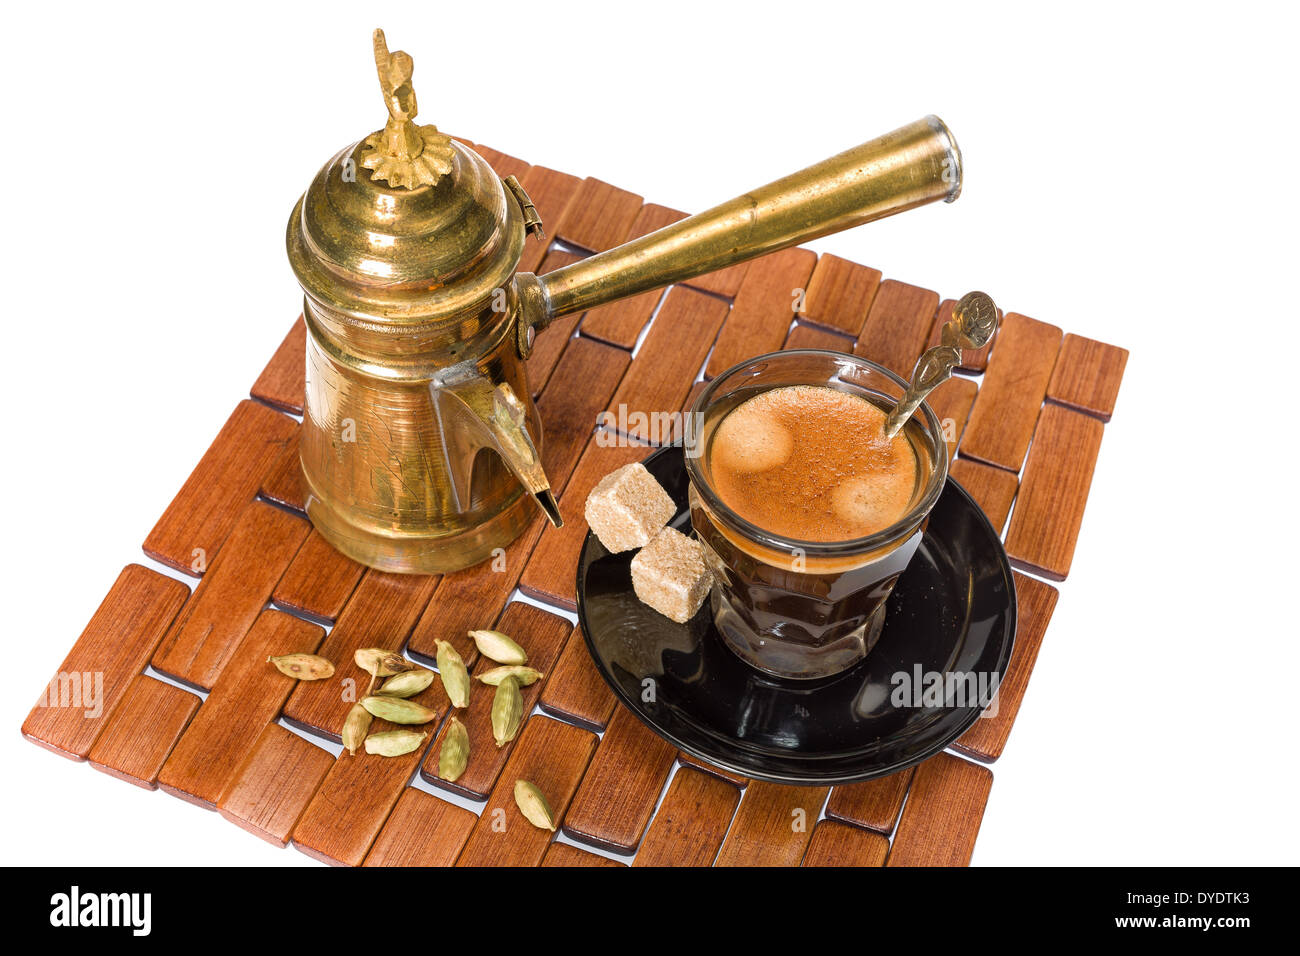 Turca tradizionale caffè servito con semi di coriandolo Foto Stock